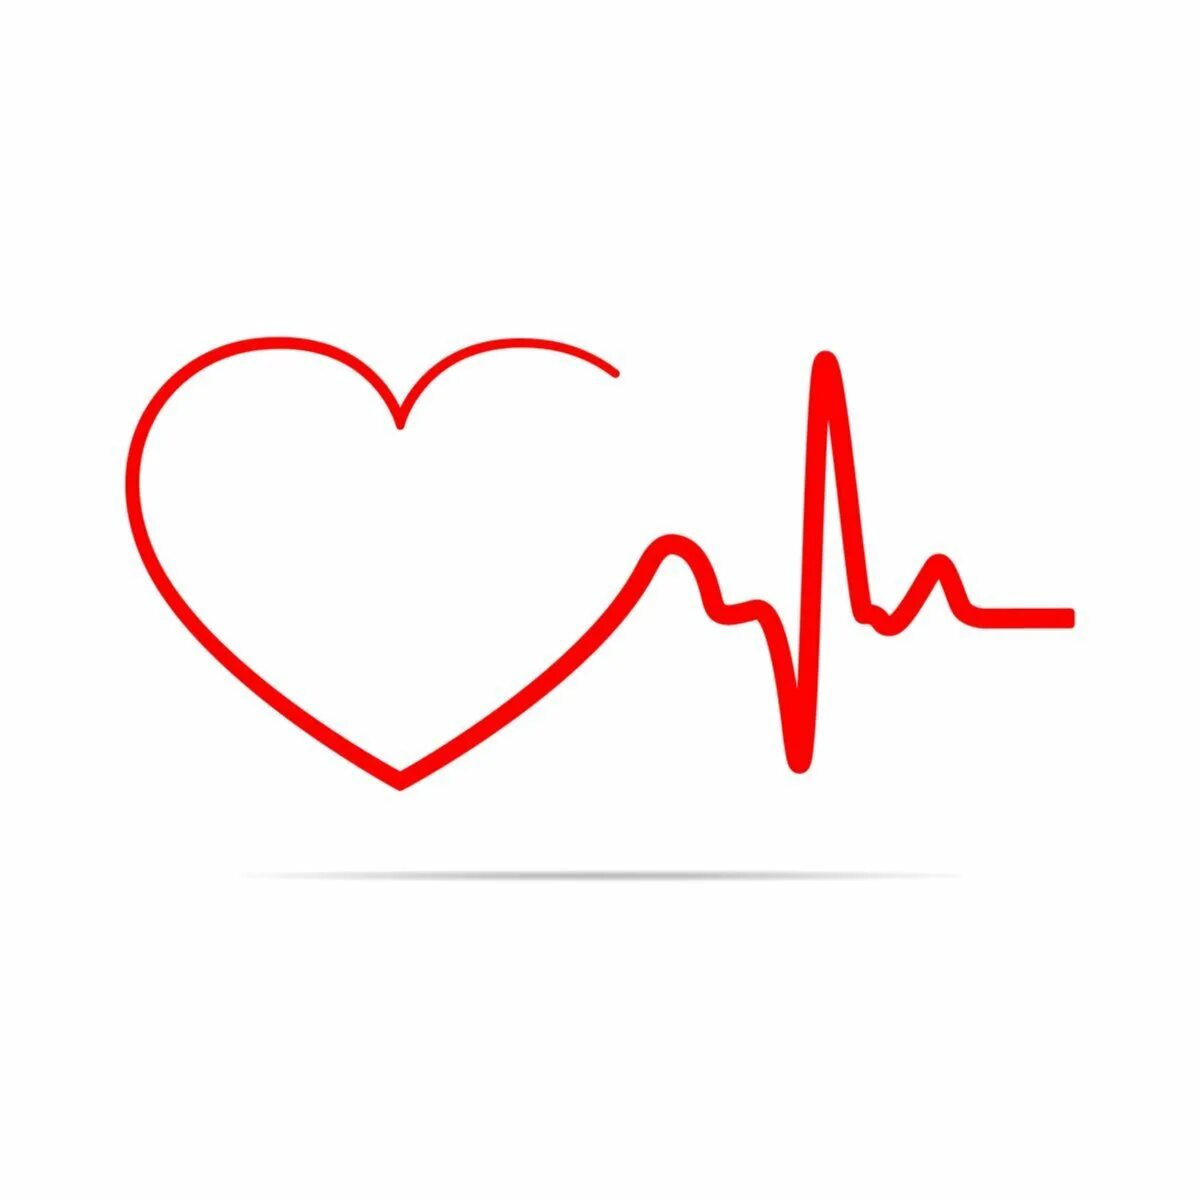 Легкое сердцебиение. Кардиограмма сердца. Кардиограмма сердца рисунок. Пульс рисунок. Сердце кардио.